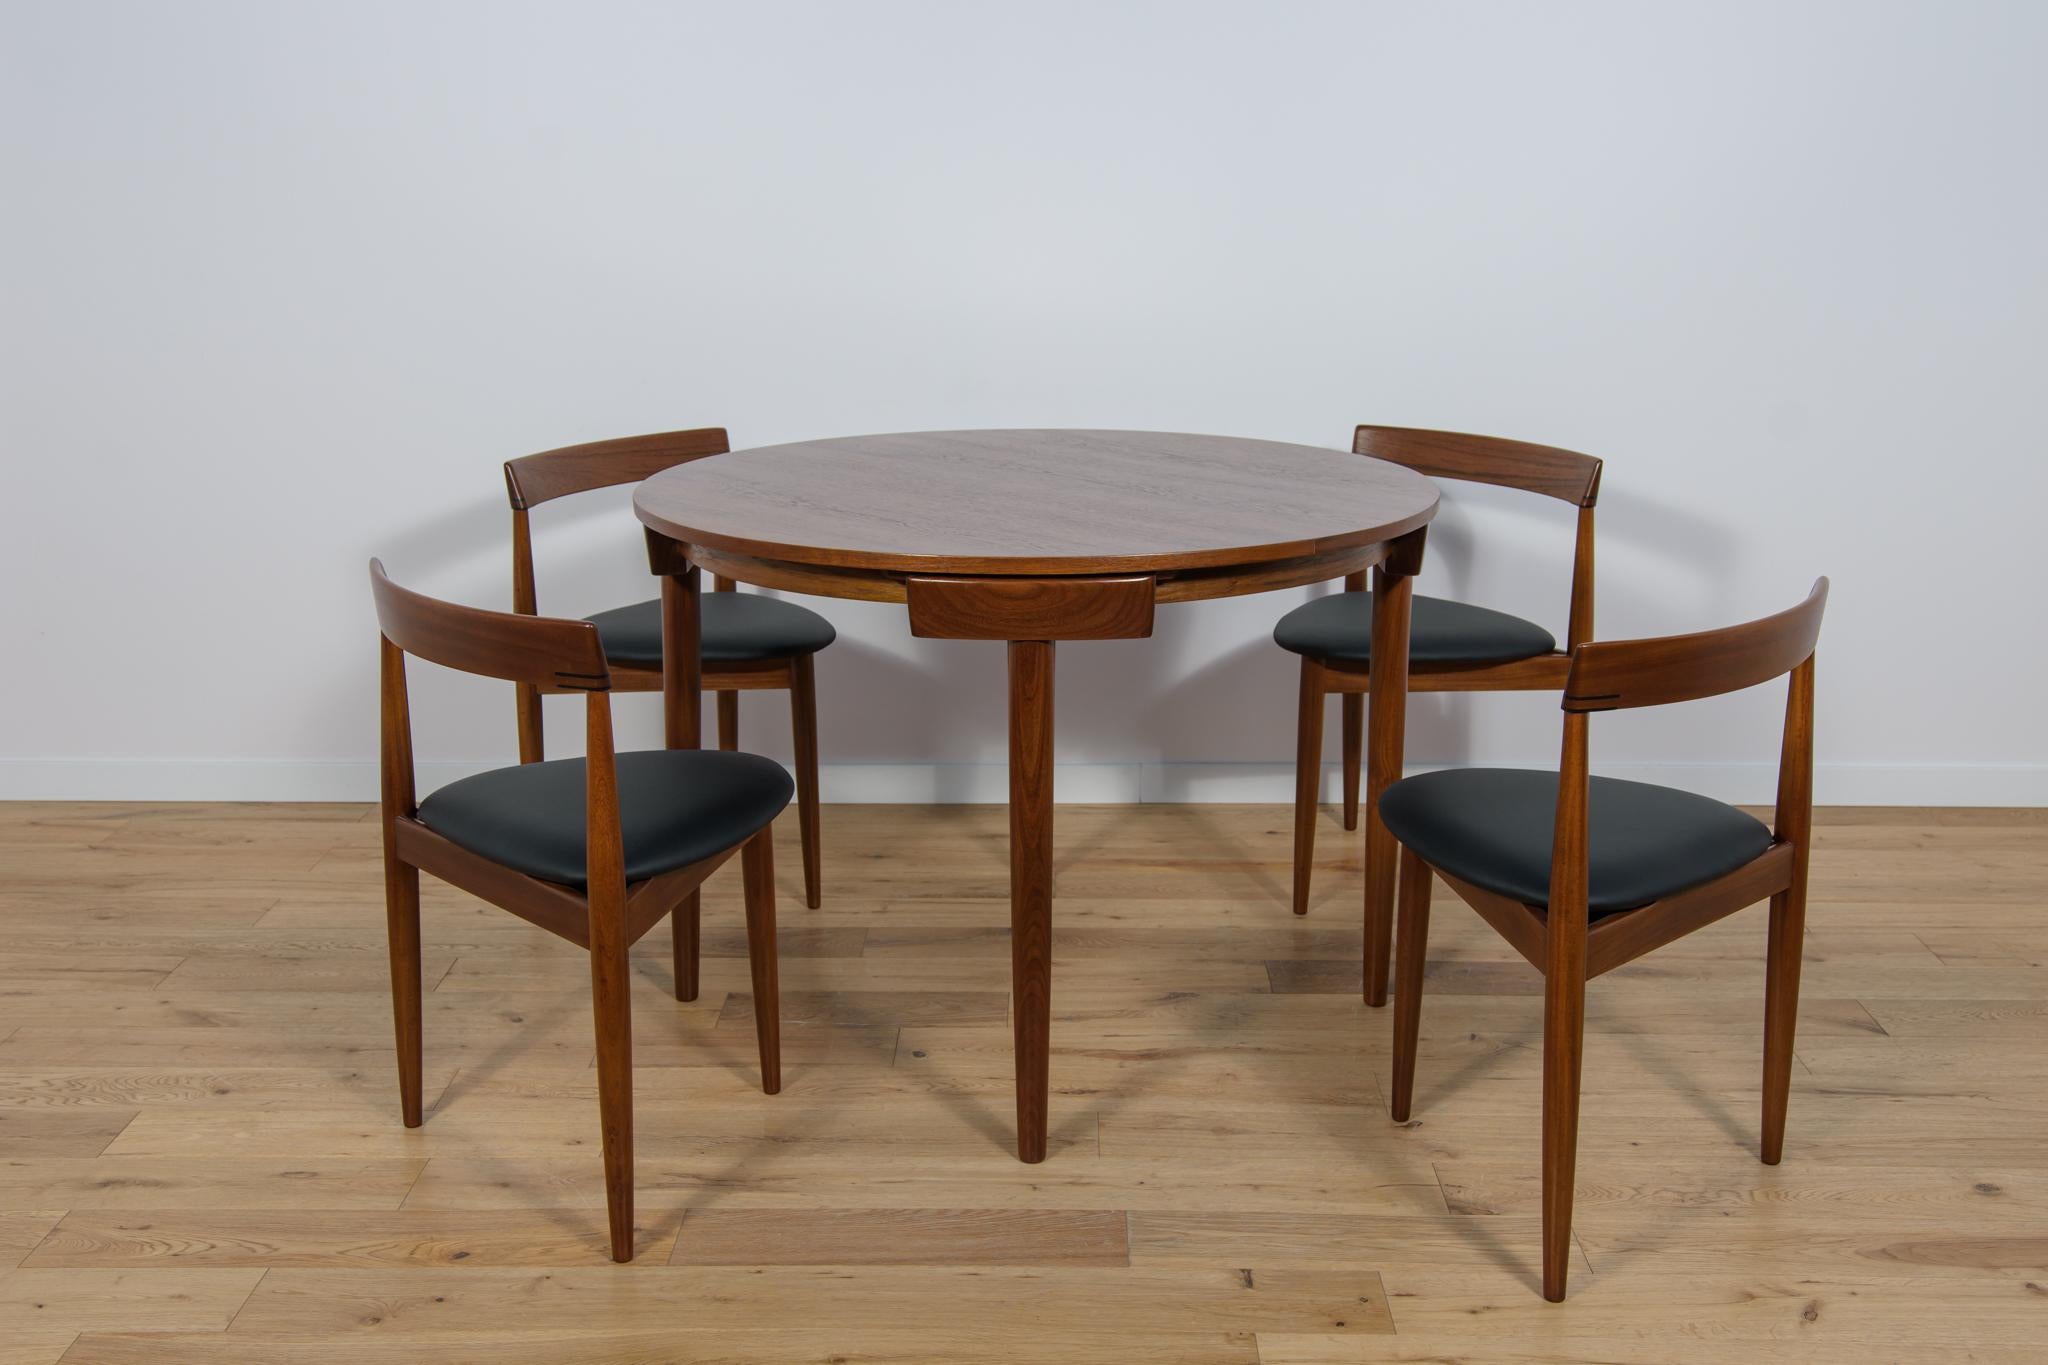 Hergestellt von Frem Rojle in Dänemark und entworfen von Hans Olsen. Die Stühle haben ein Gestell aus Teakholz und eine dreieckige Sitzfläche, die mit schwarzem New Natural Leder gepolstert ist. Die Holzteile wurden von der alten Oberfläche